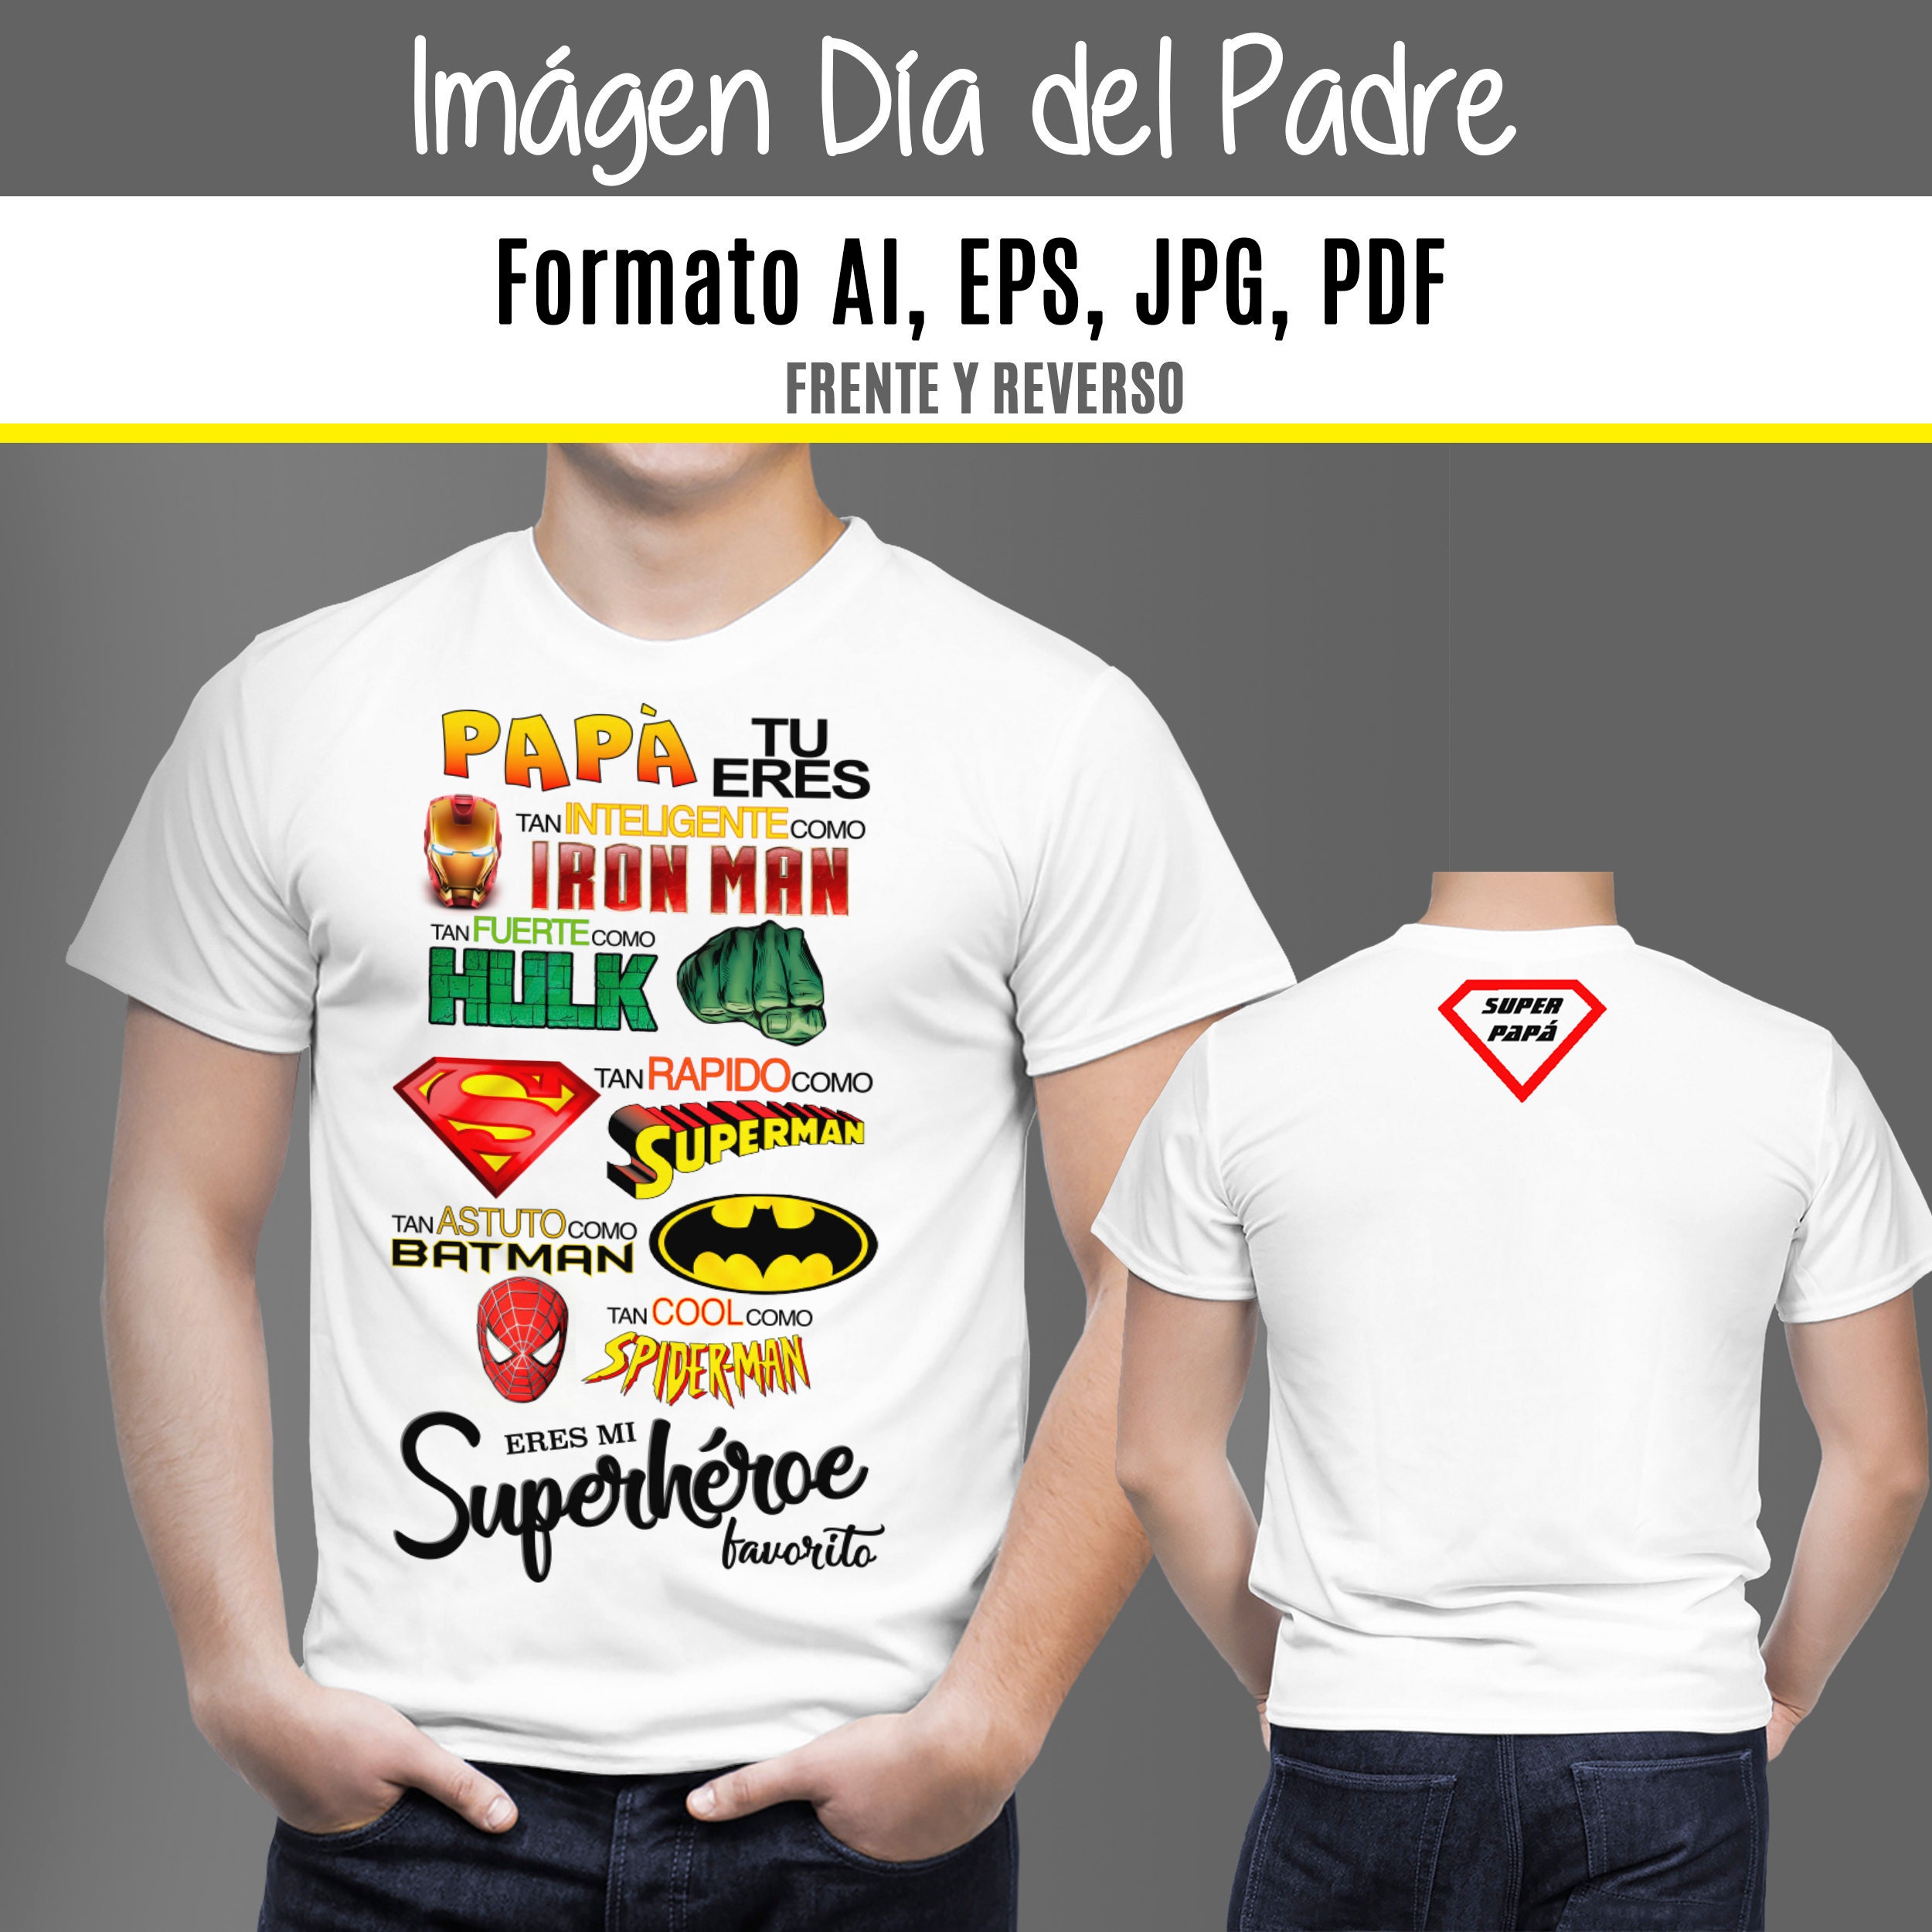 pedir disculpas resbalón Definitivo PNG Super heroe Feliz Dia Del Padre pngai eps pdf Fathers - Etsy México